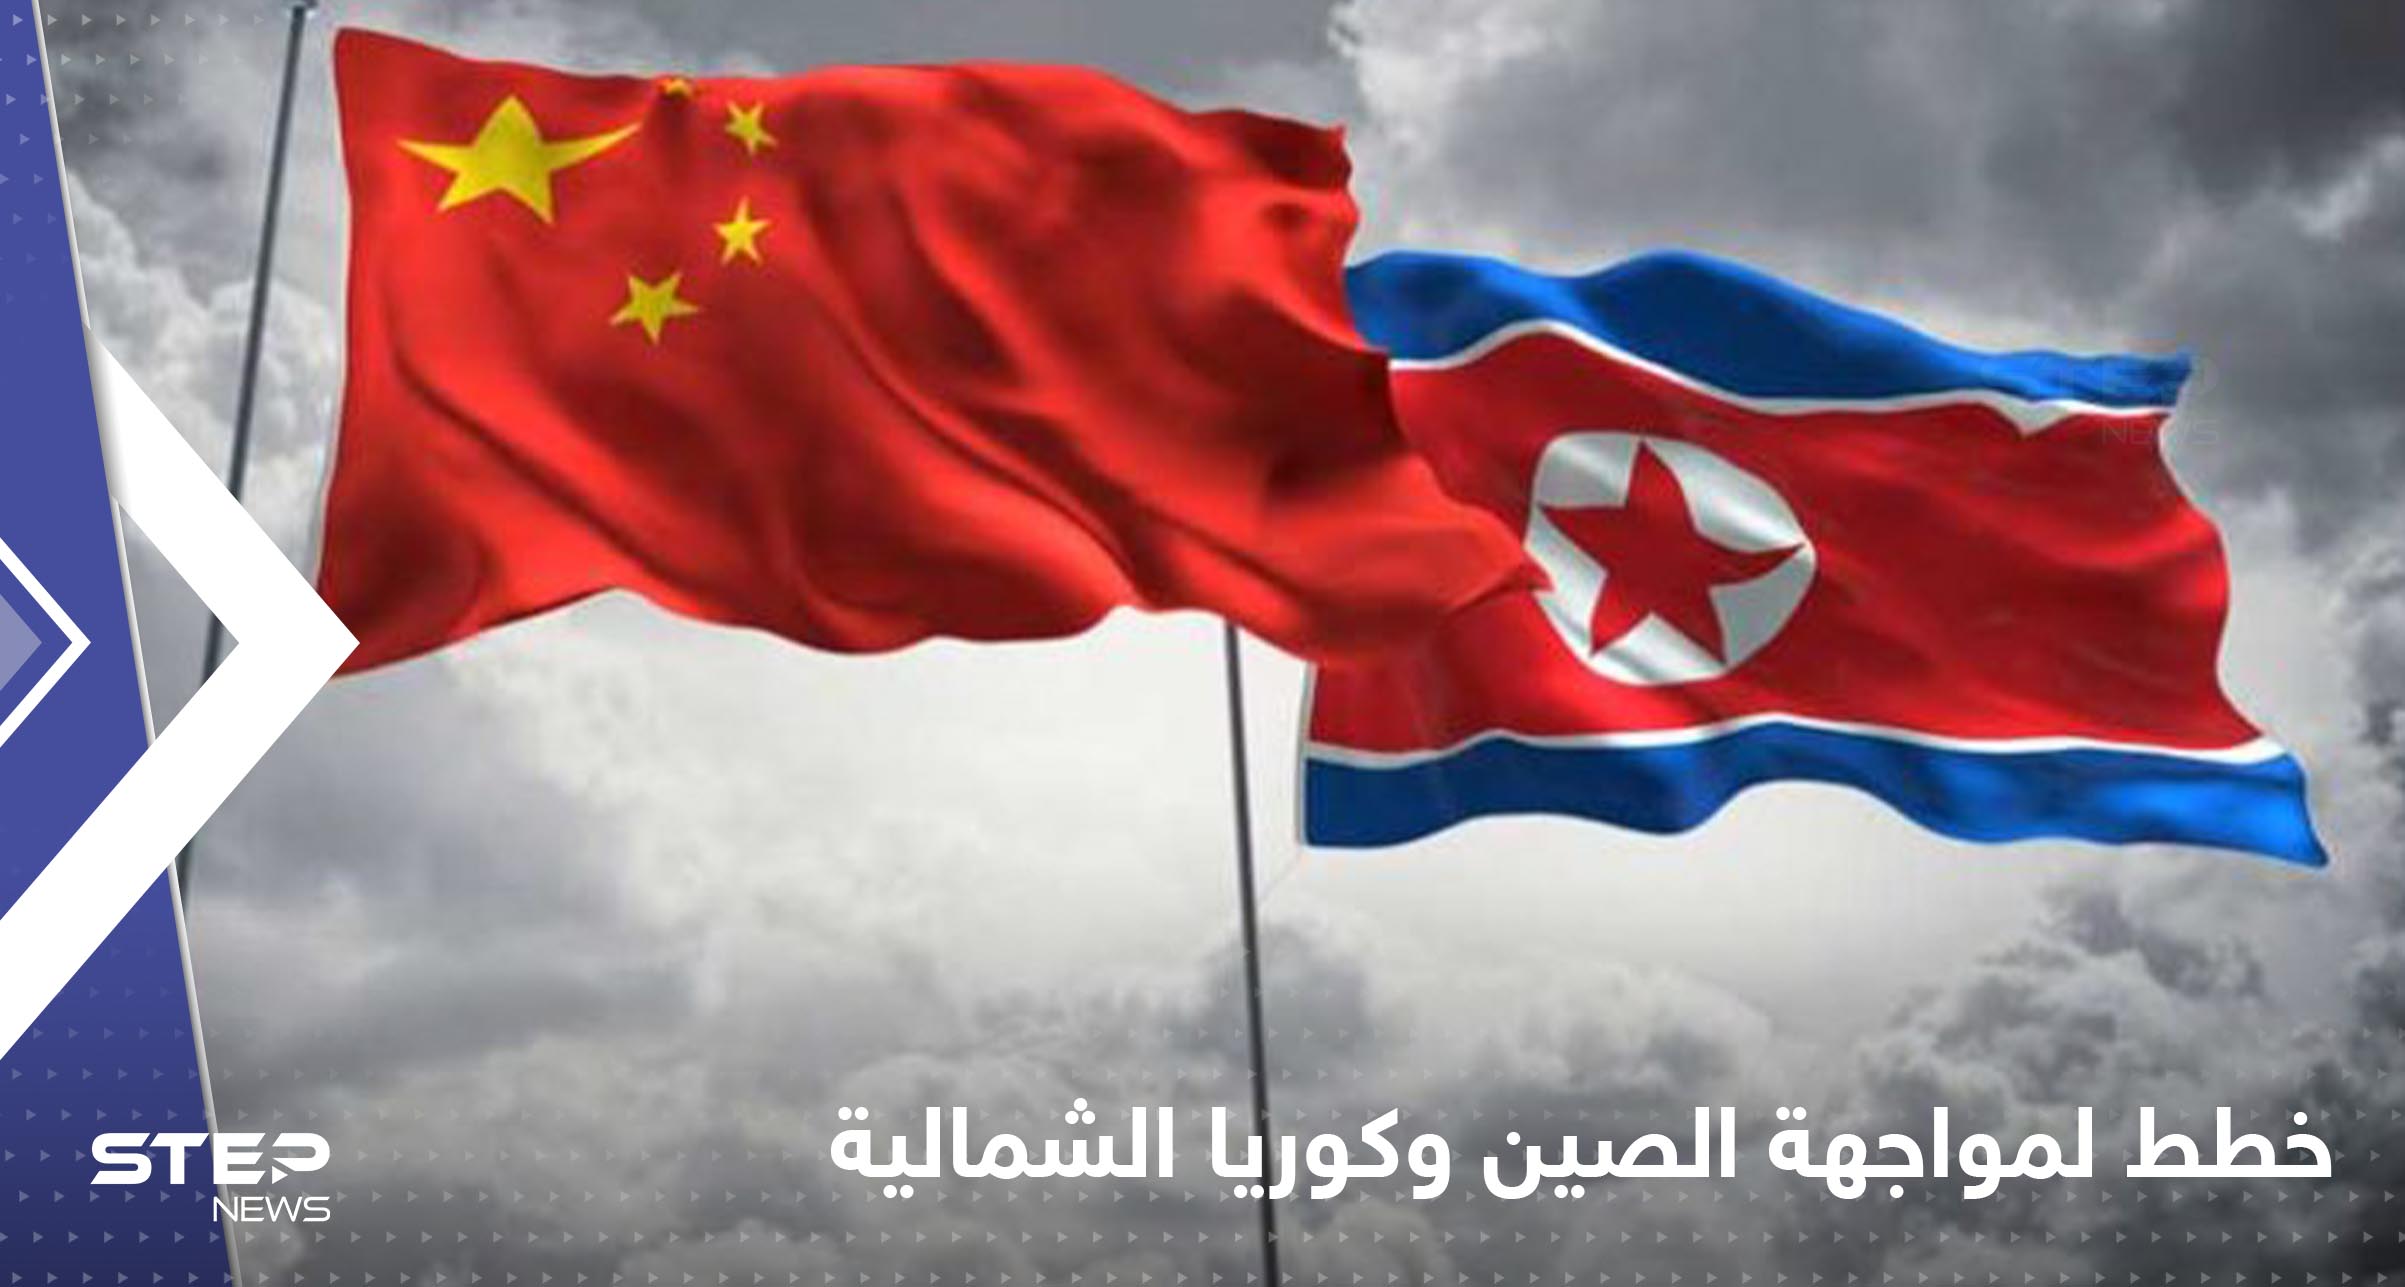 3 دول تعد خططاً عسكرية لضرب الصين وكوريا الشمالية معاً